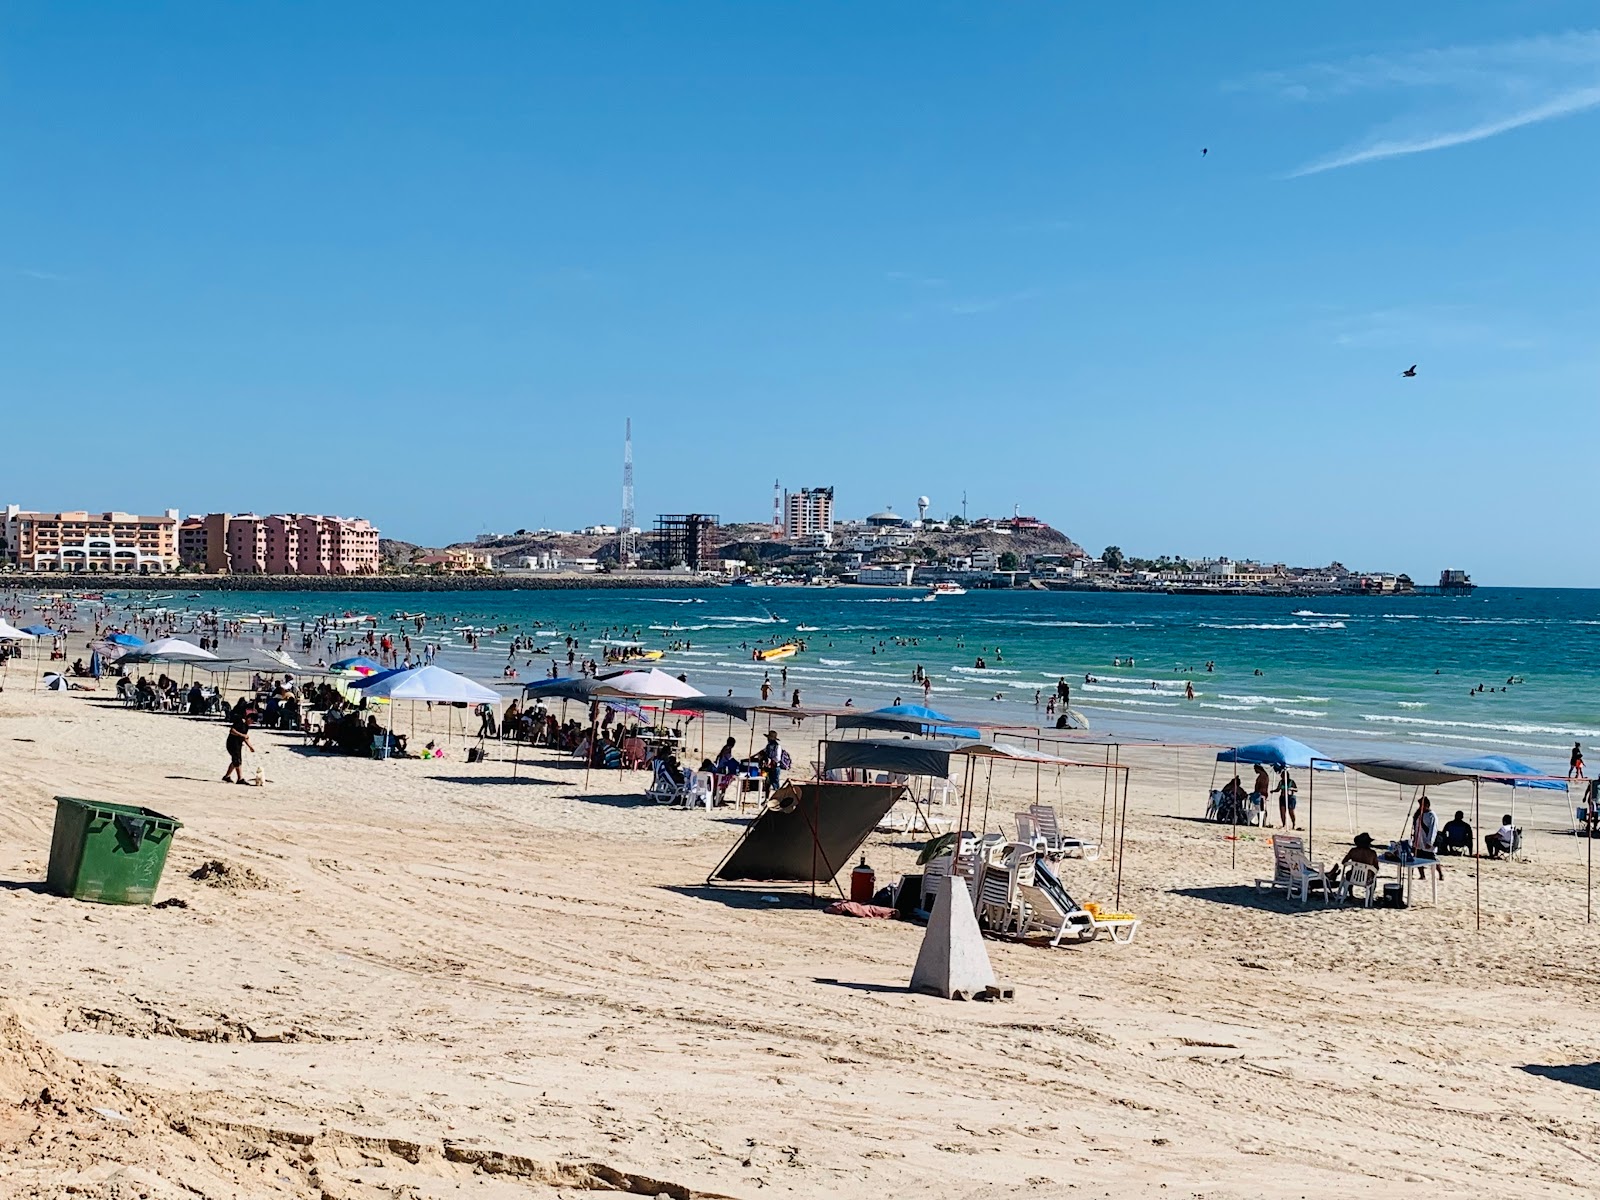 Zdjęcie Playa Hermosa - popularne miejsce wśród znawców relaksu